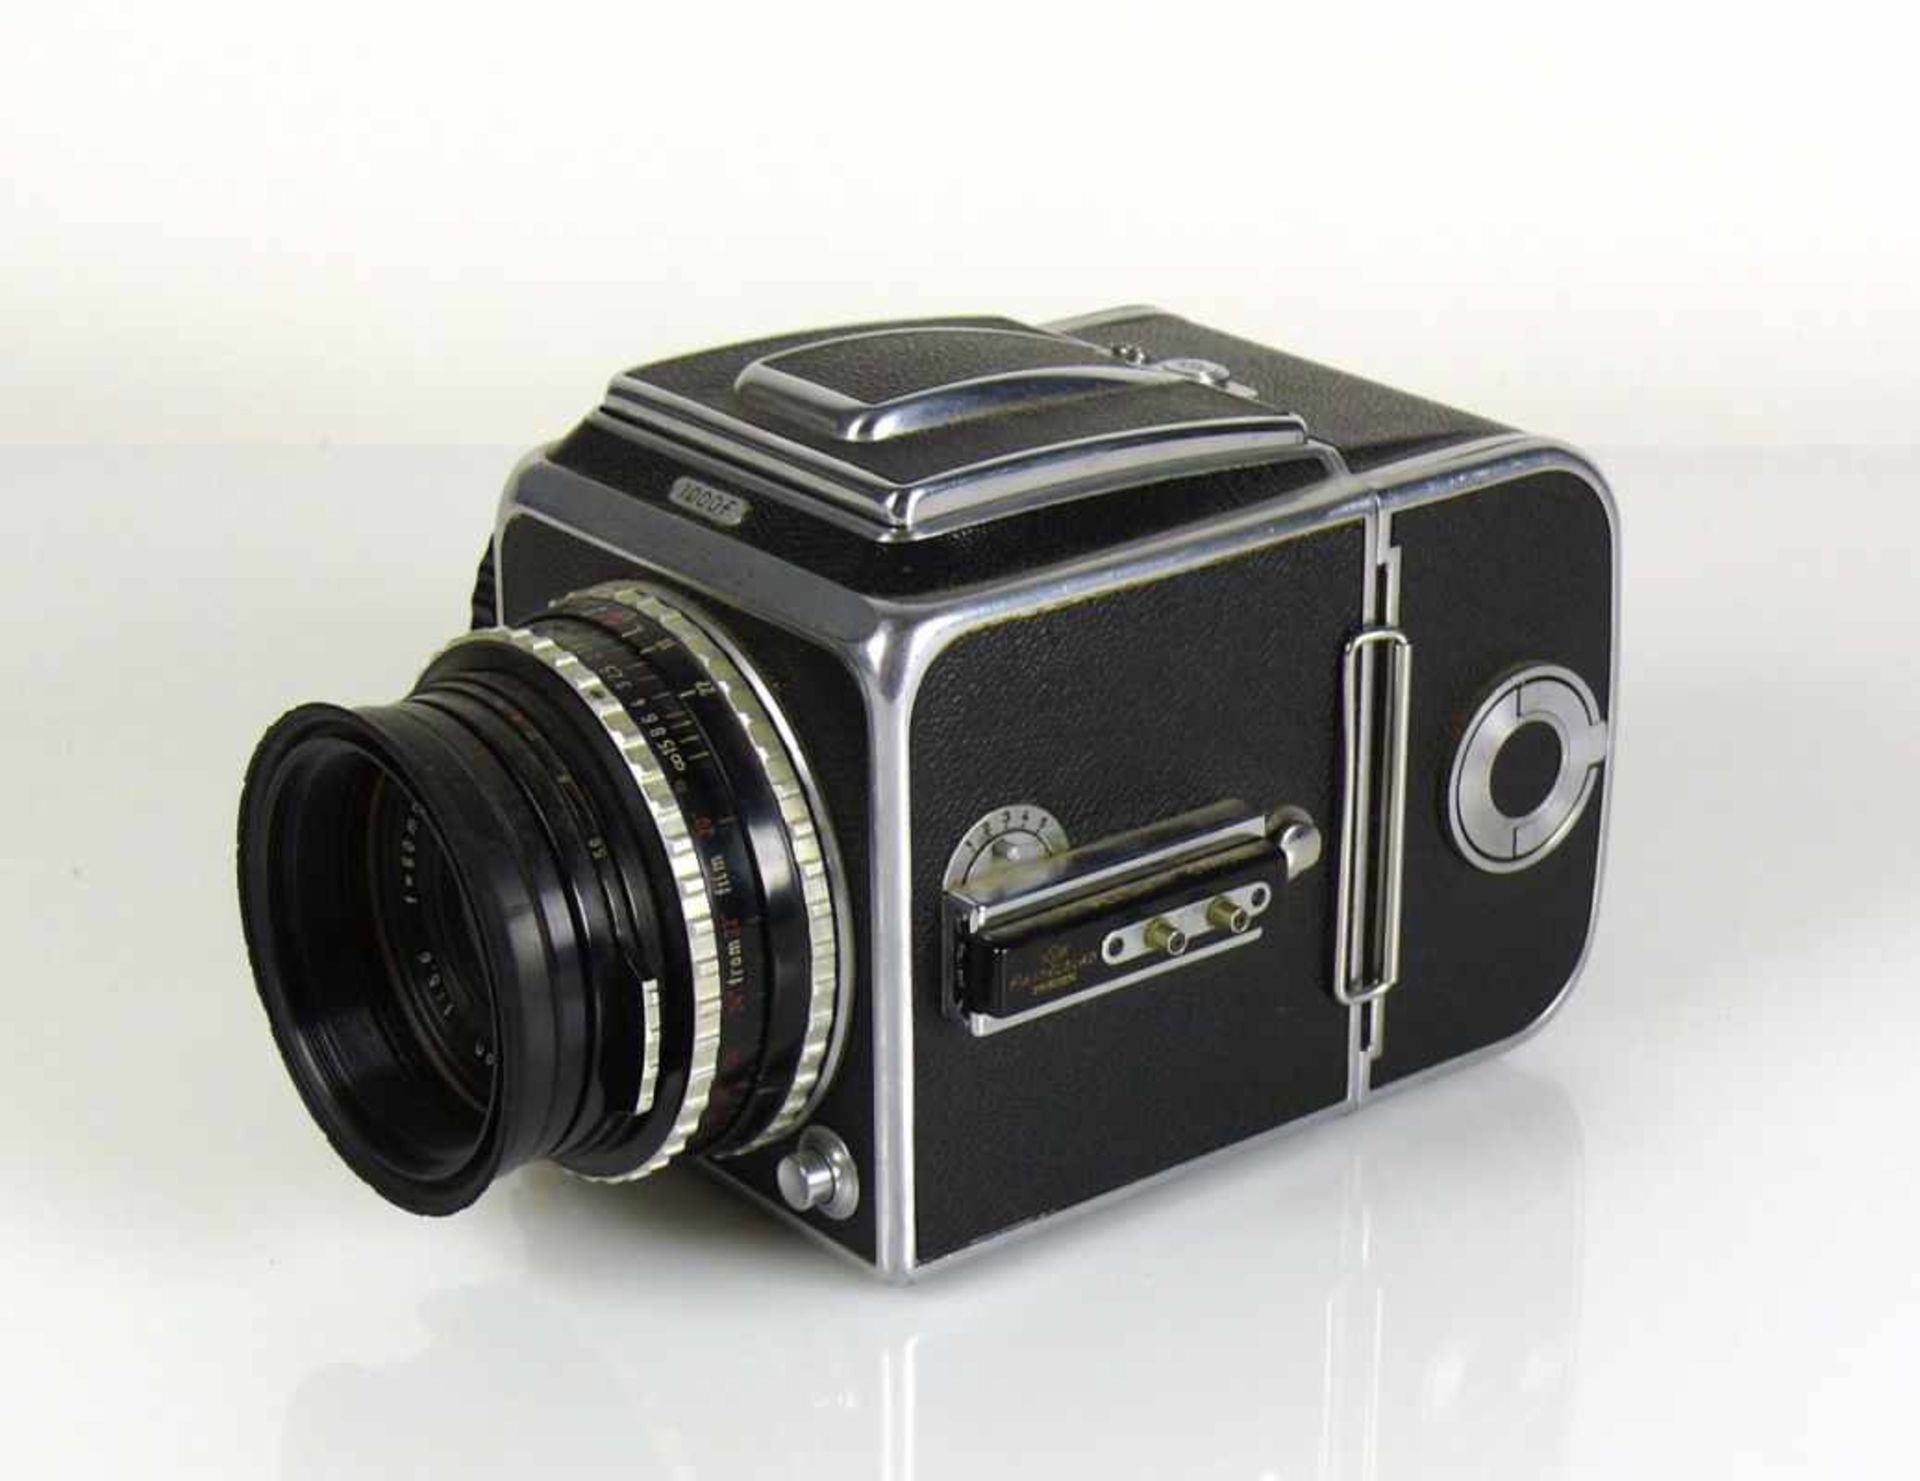 Hasselblad-Kamera Carl Zeiss-Objektiv Nr. 1204620; auf Gehäuse bezeichnet: 1000f; Funktion nicht